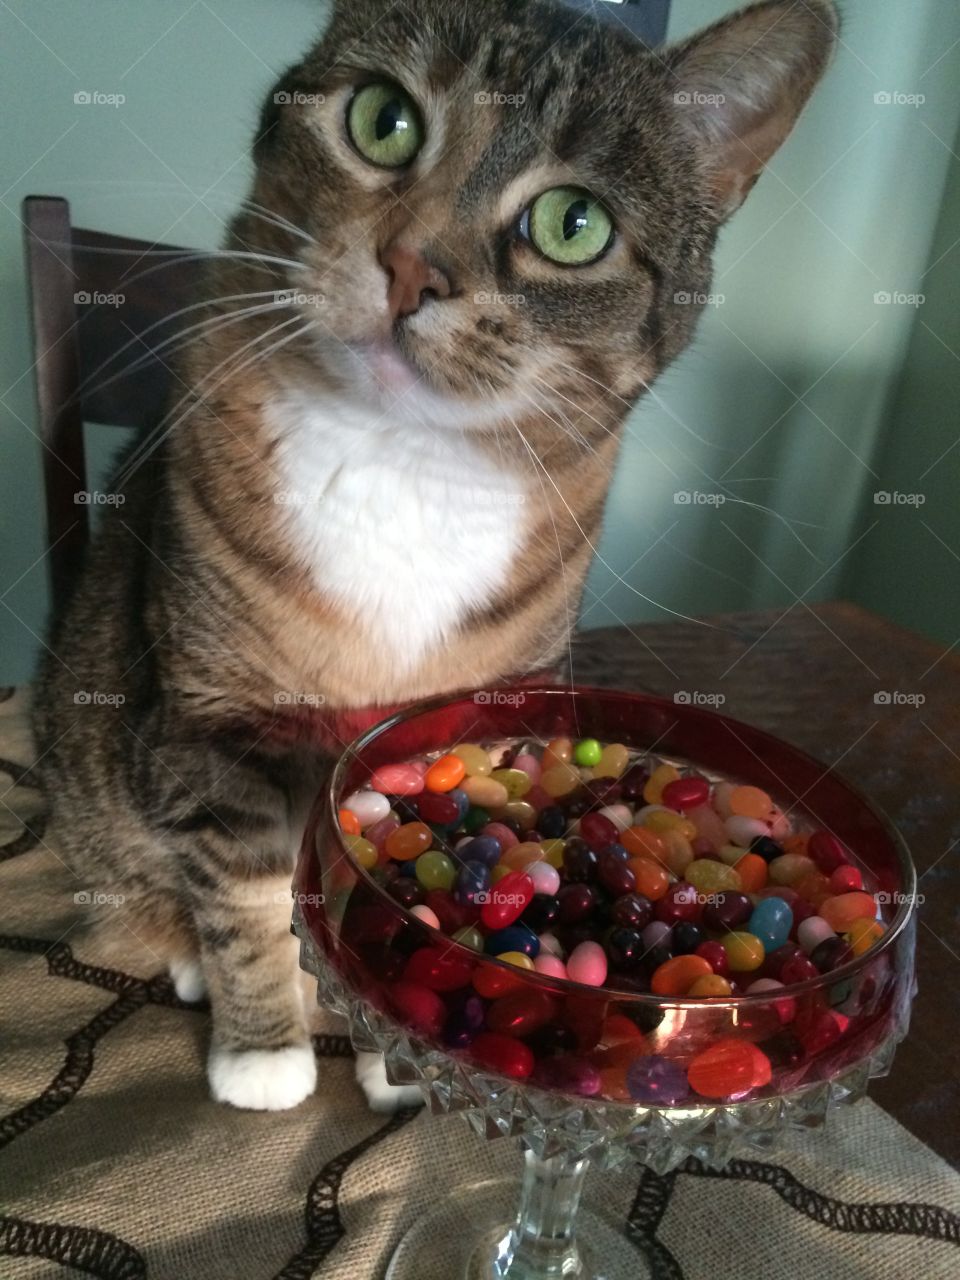 cat bowl full of jelly beans